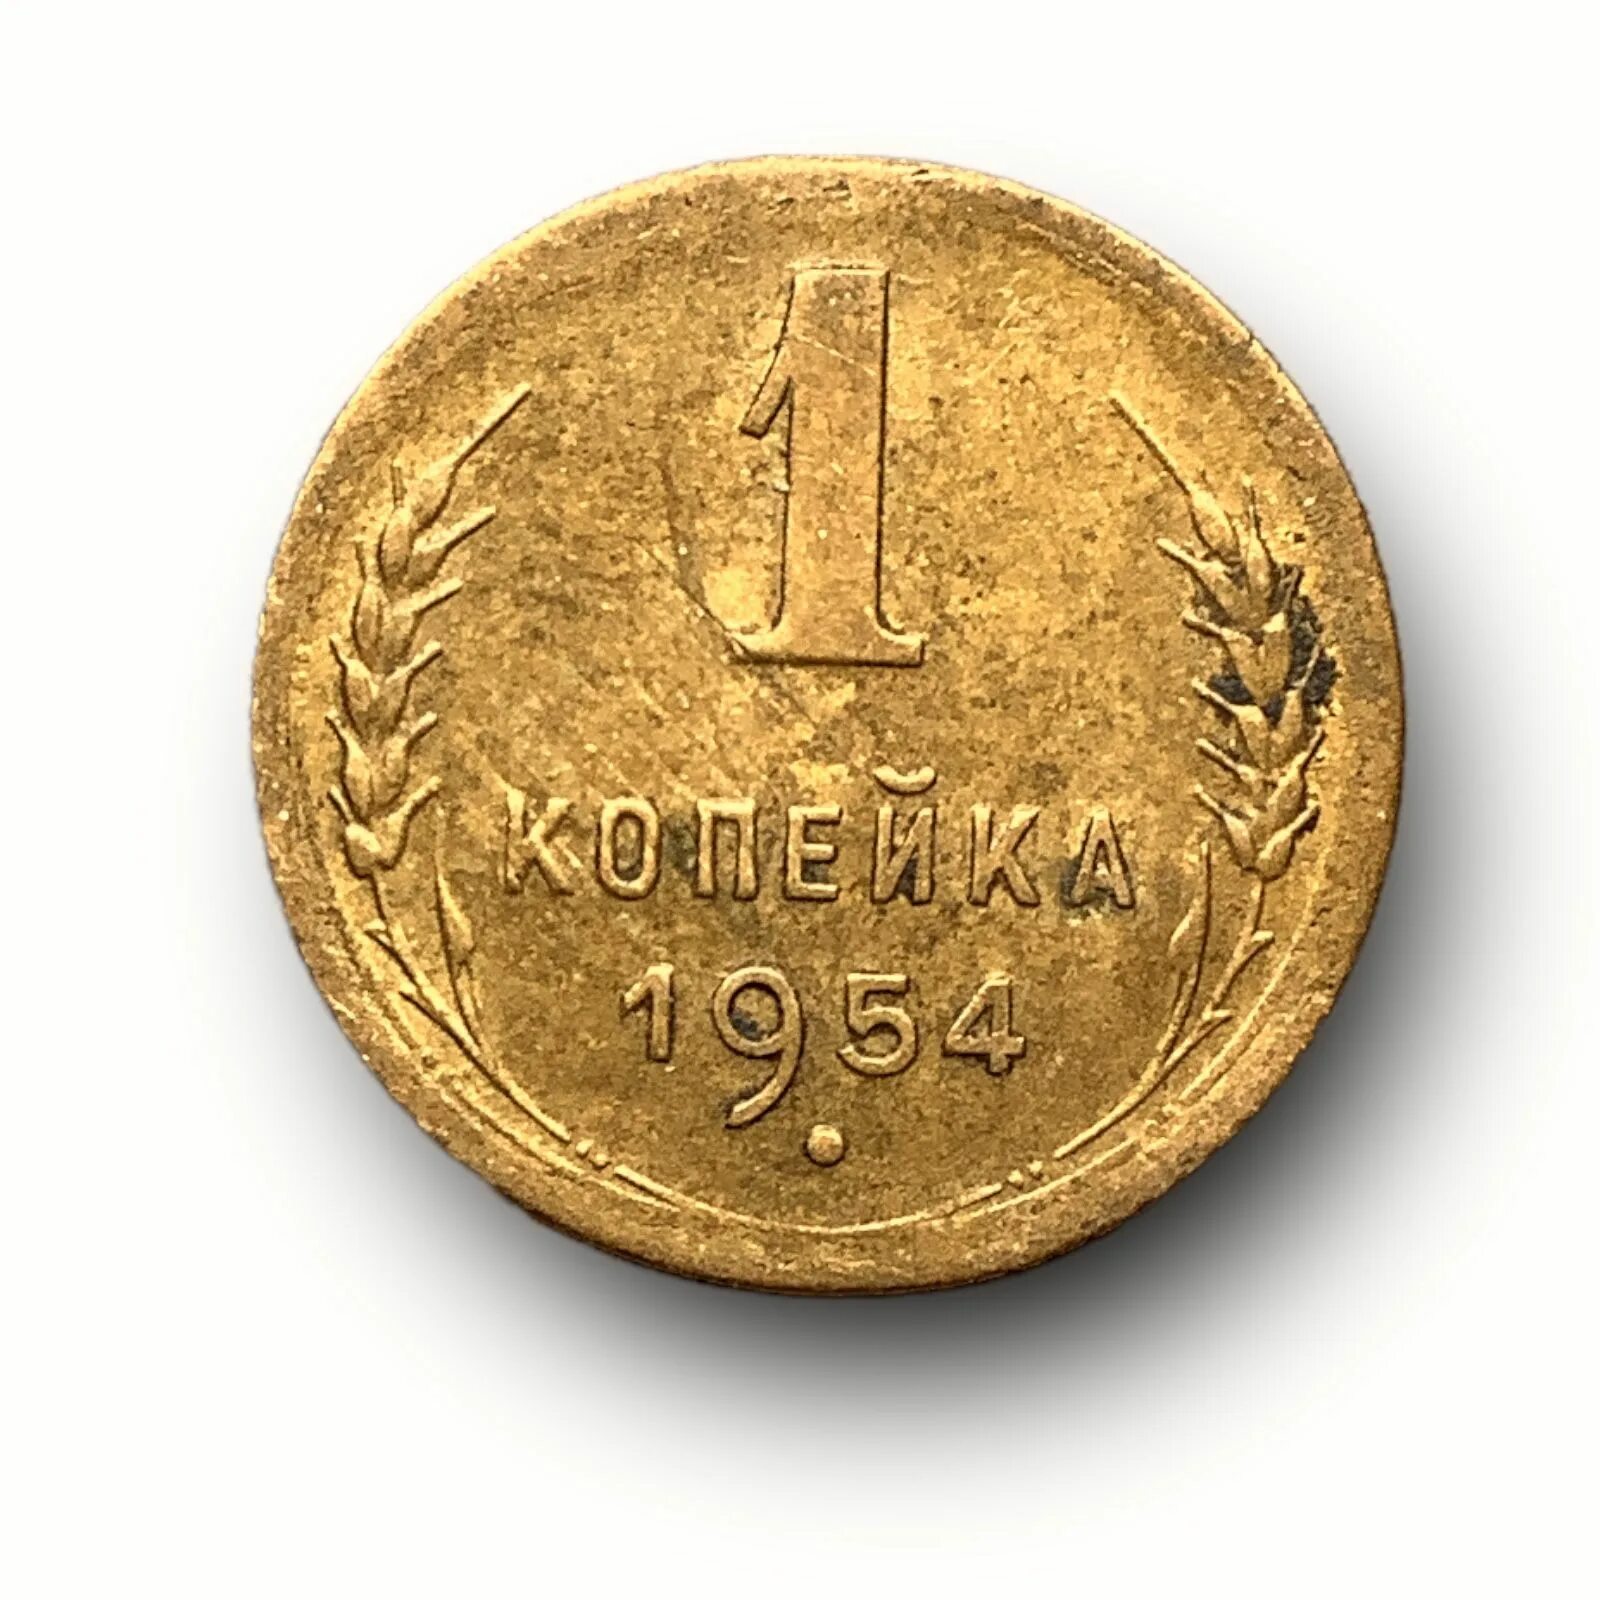 1 Копейка 1954. Монета 1954 копейка. 3 Копейки 1954 года. 1 Копейка. Монеты 1954 года стоимость